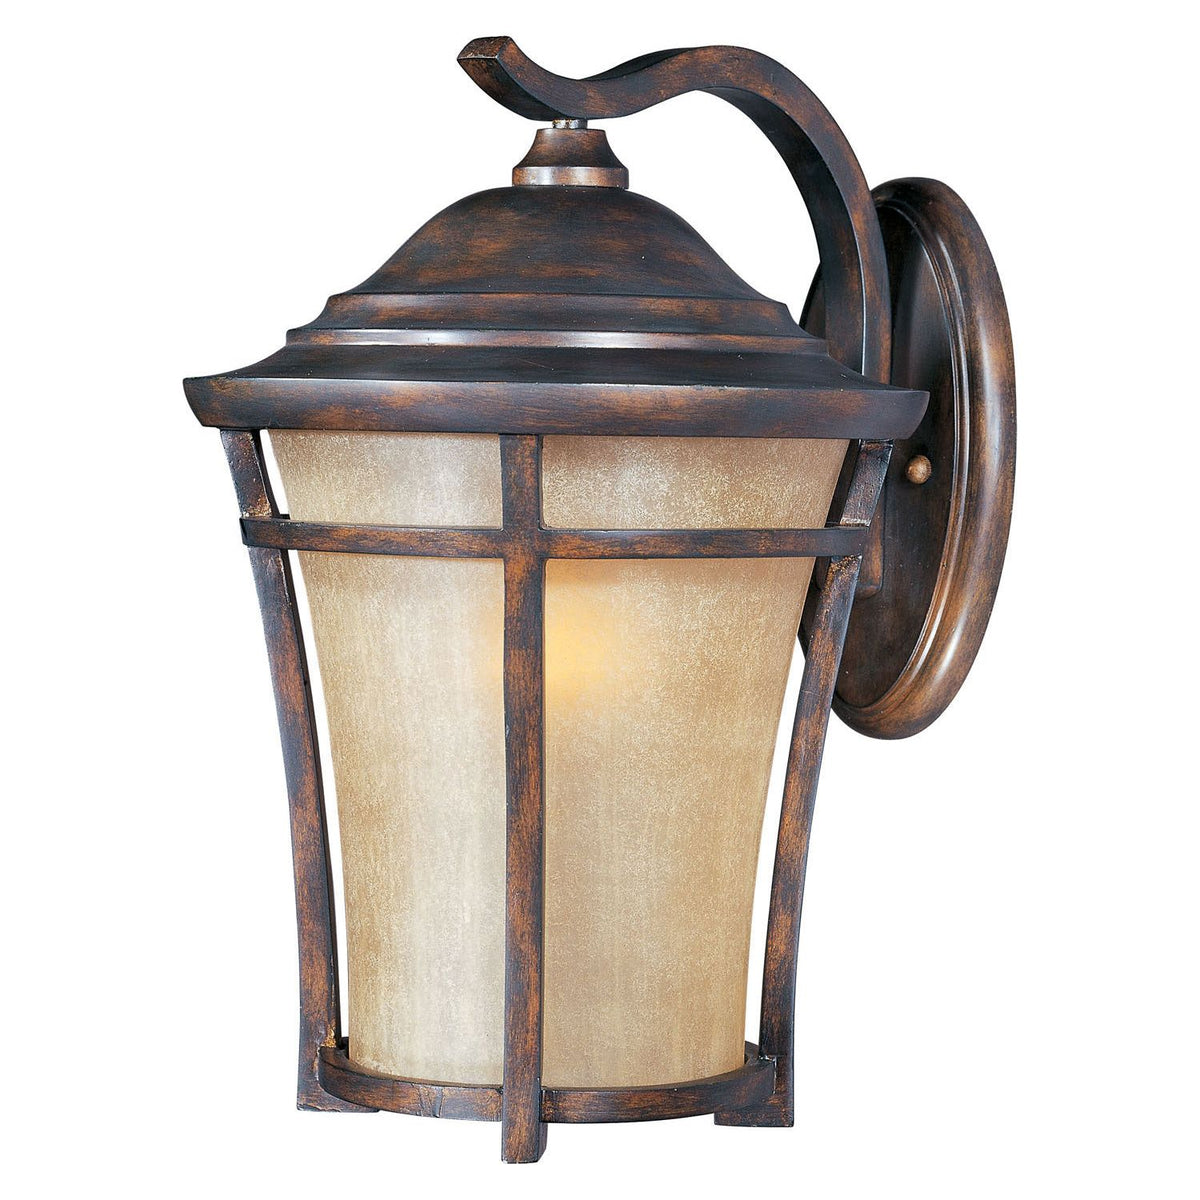 Maxim - 40165GFCO - One Light Outdoor Wall Lantern - Balboa VX - Copper Oxide